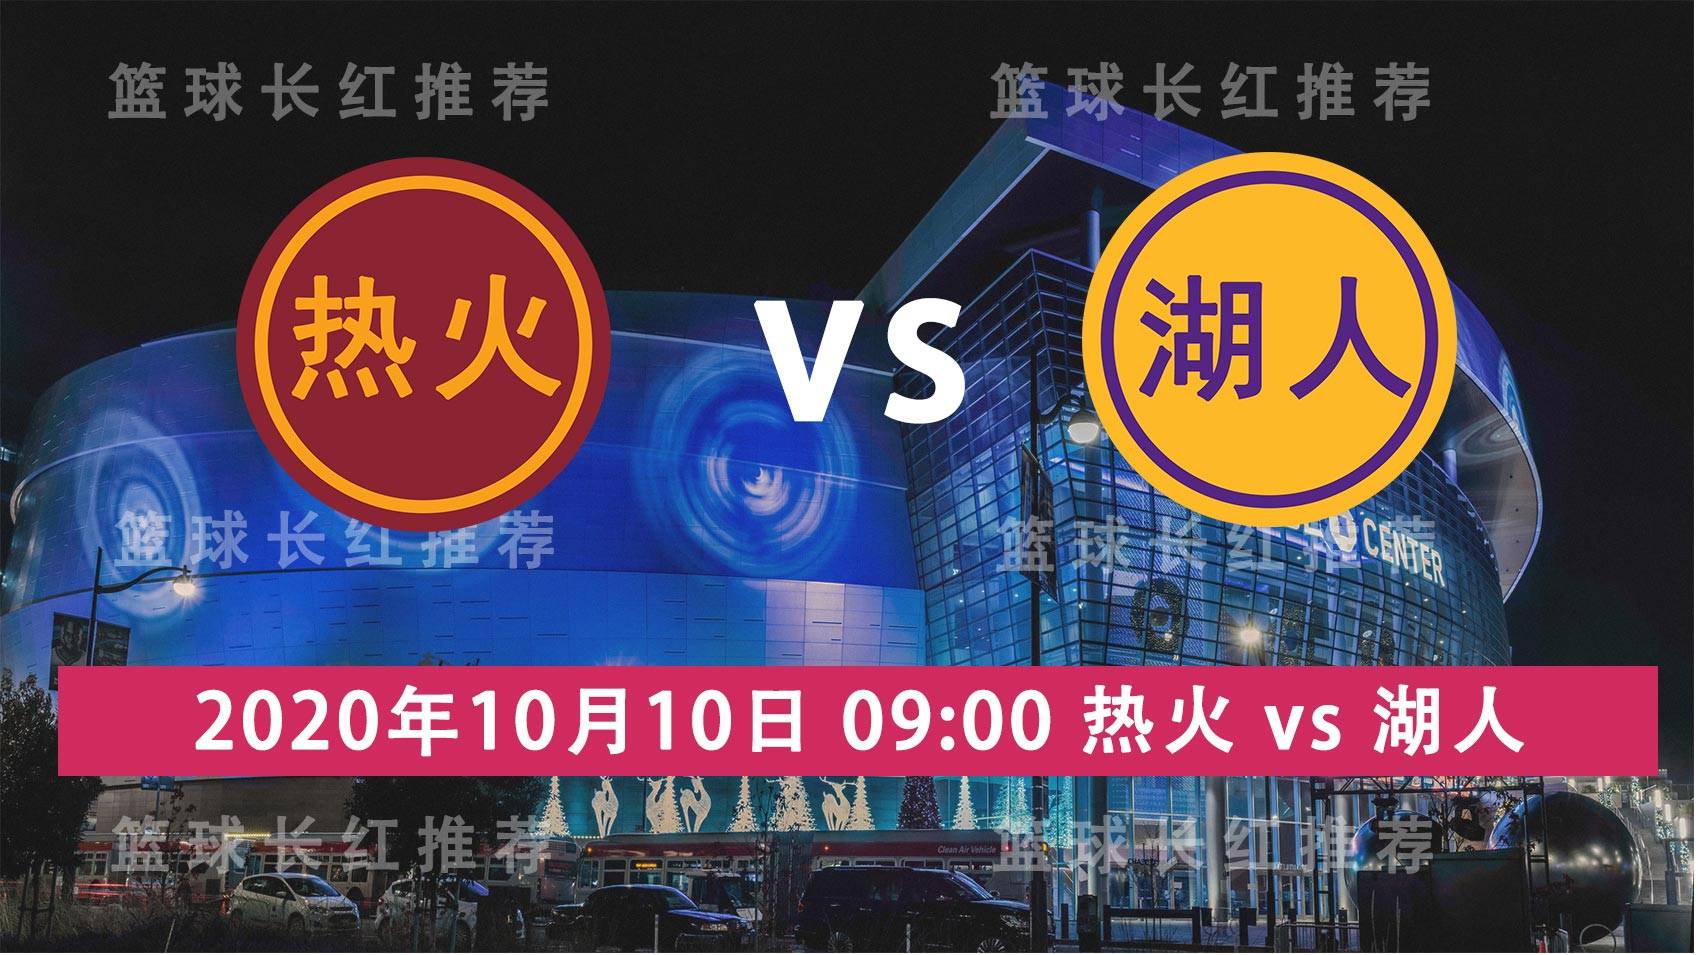 NBA 10月10日 湖人 vs 热火 G5爆红